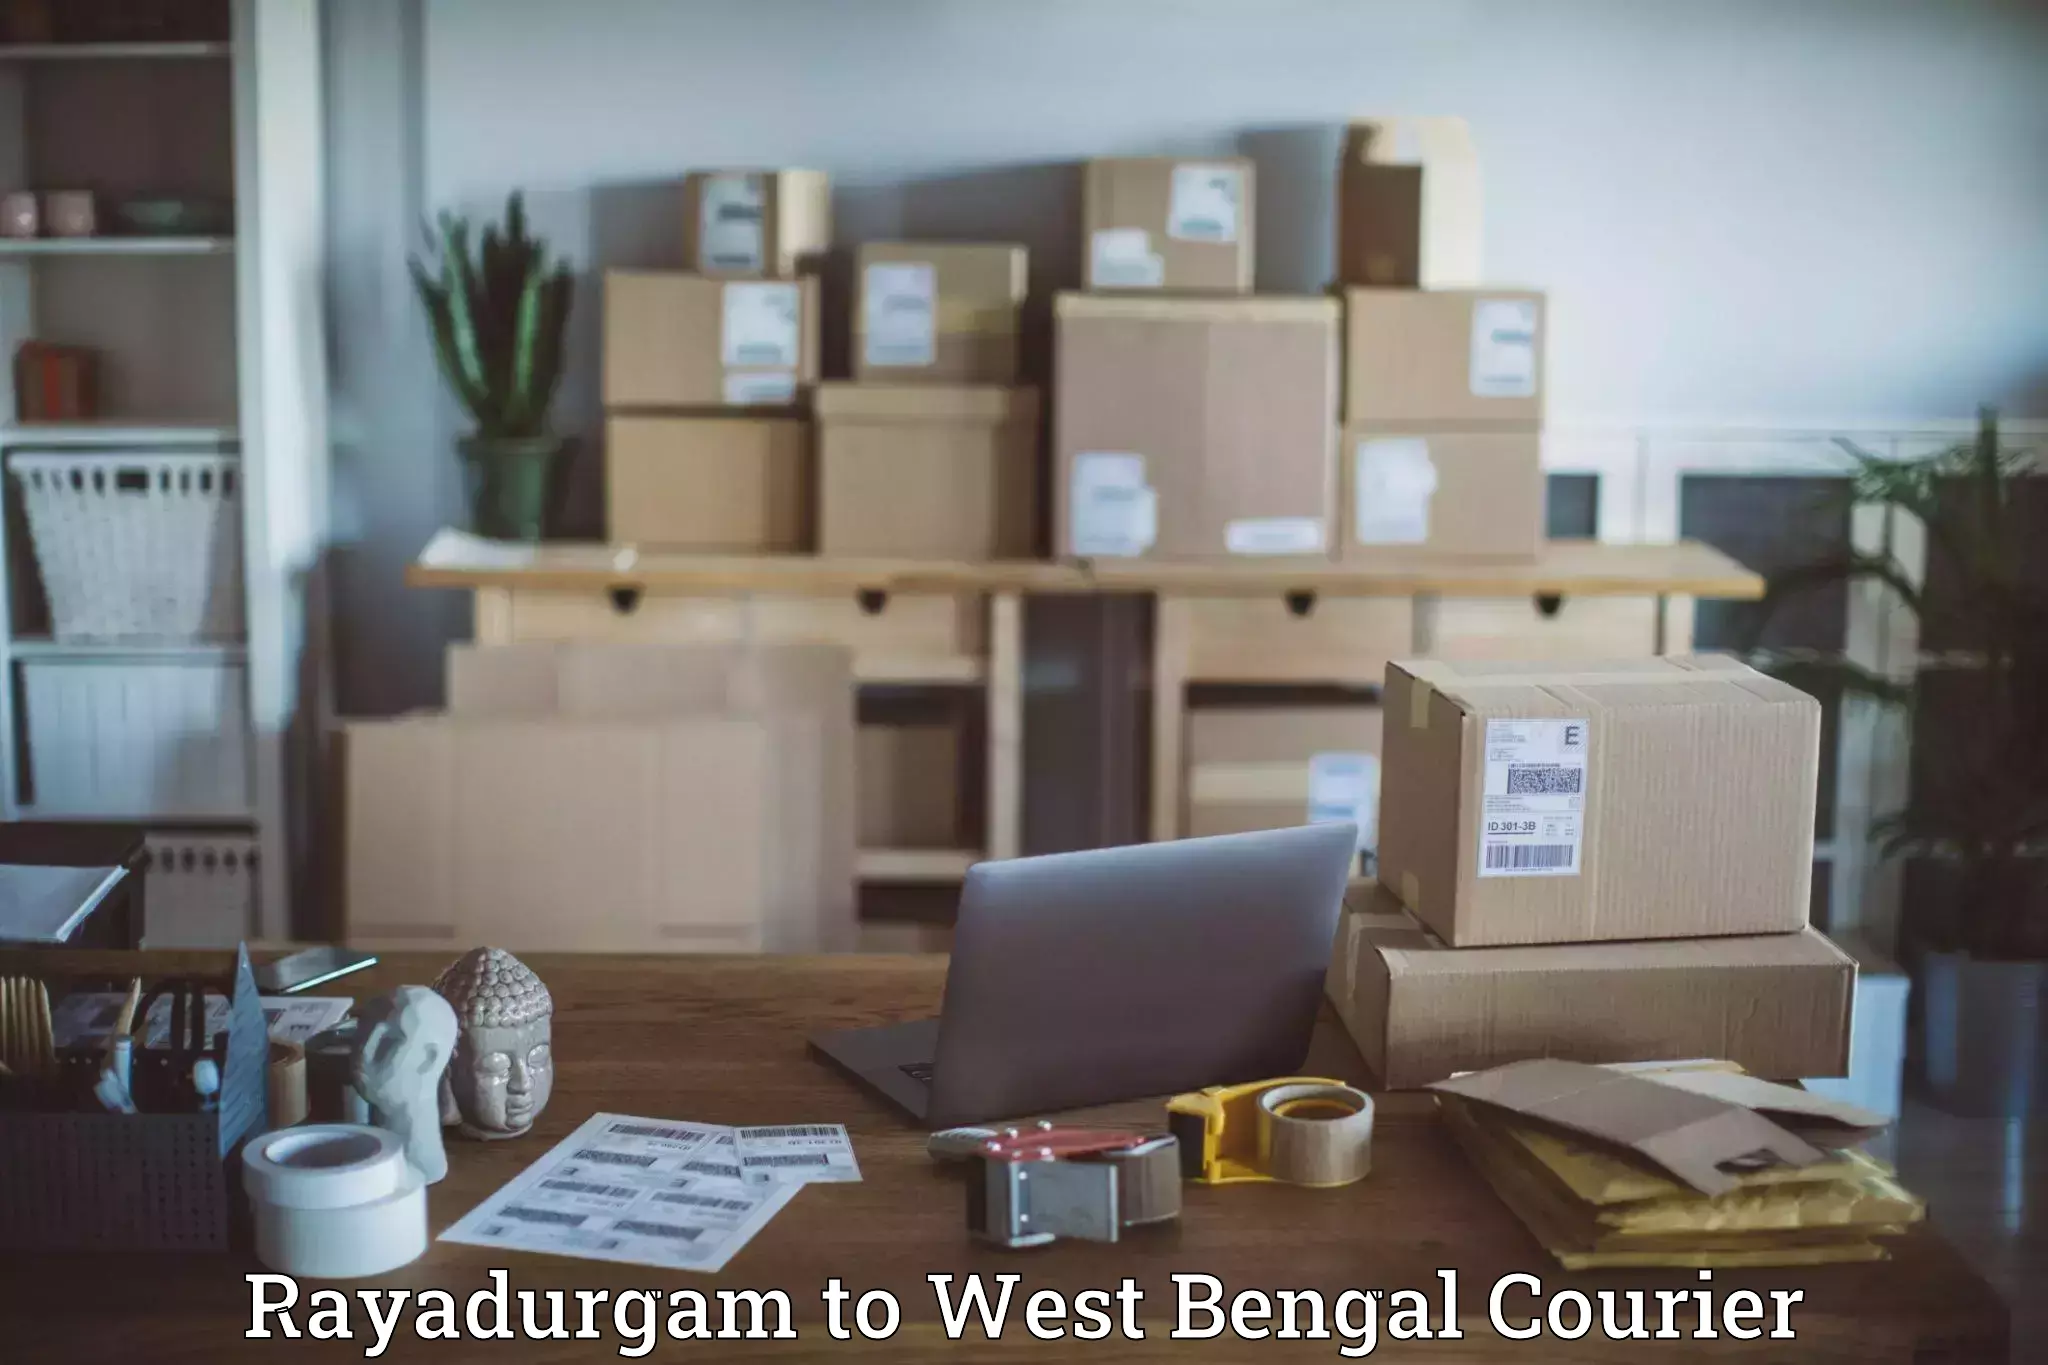 Door-to-door freight service Rayadurgam to West Bengal